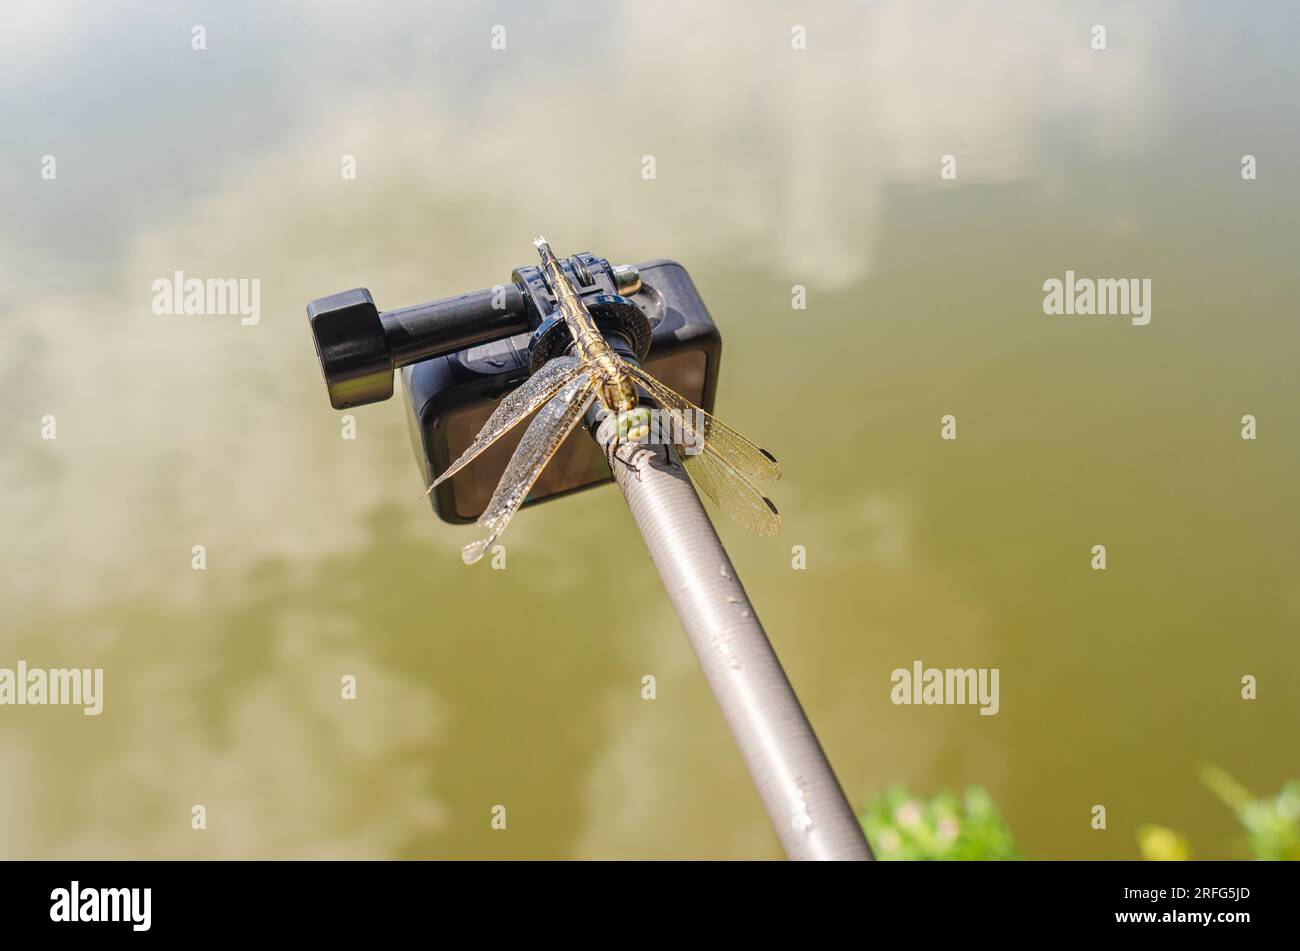 Dragonfly est assis sur une caméra d'action trépied dans la nature. Caméra embarquée pour prise de vue nature. Insectes intéressants Banque D'Images